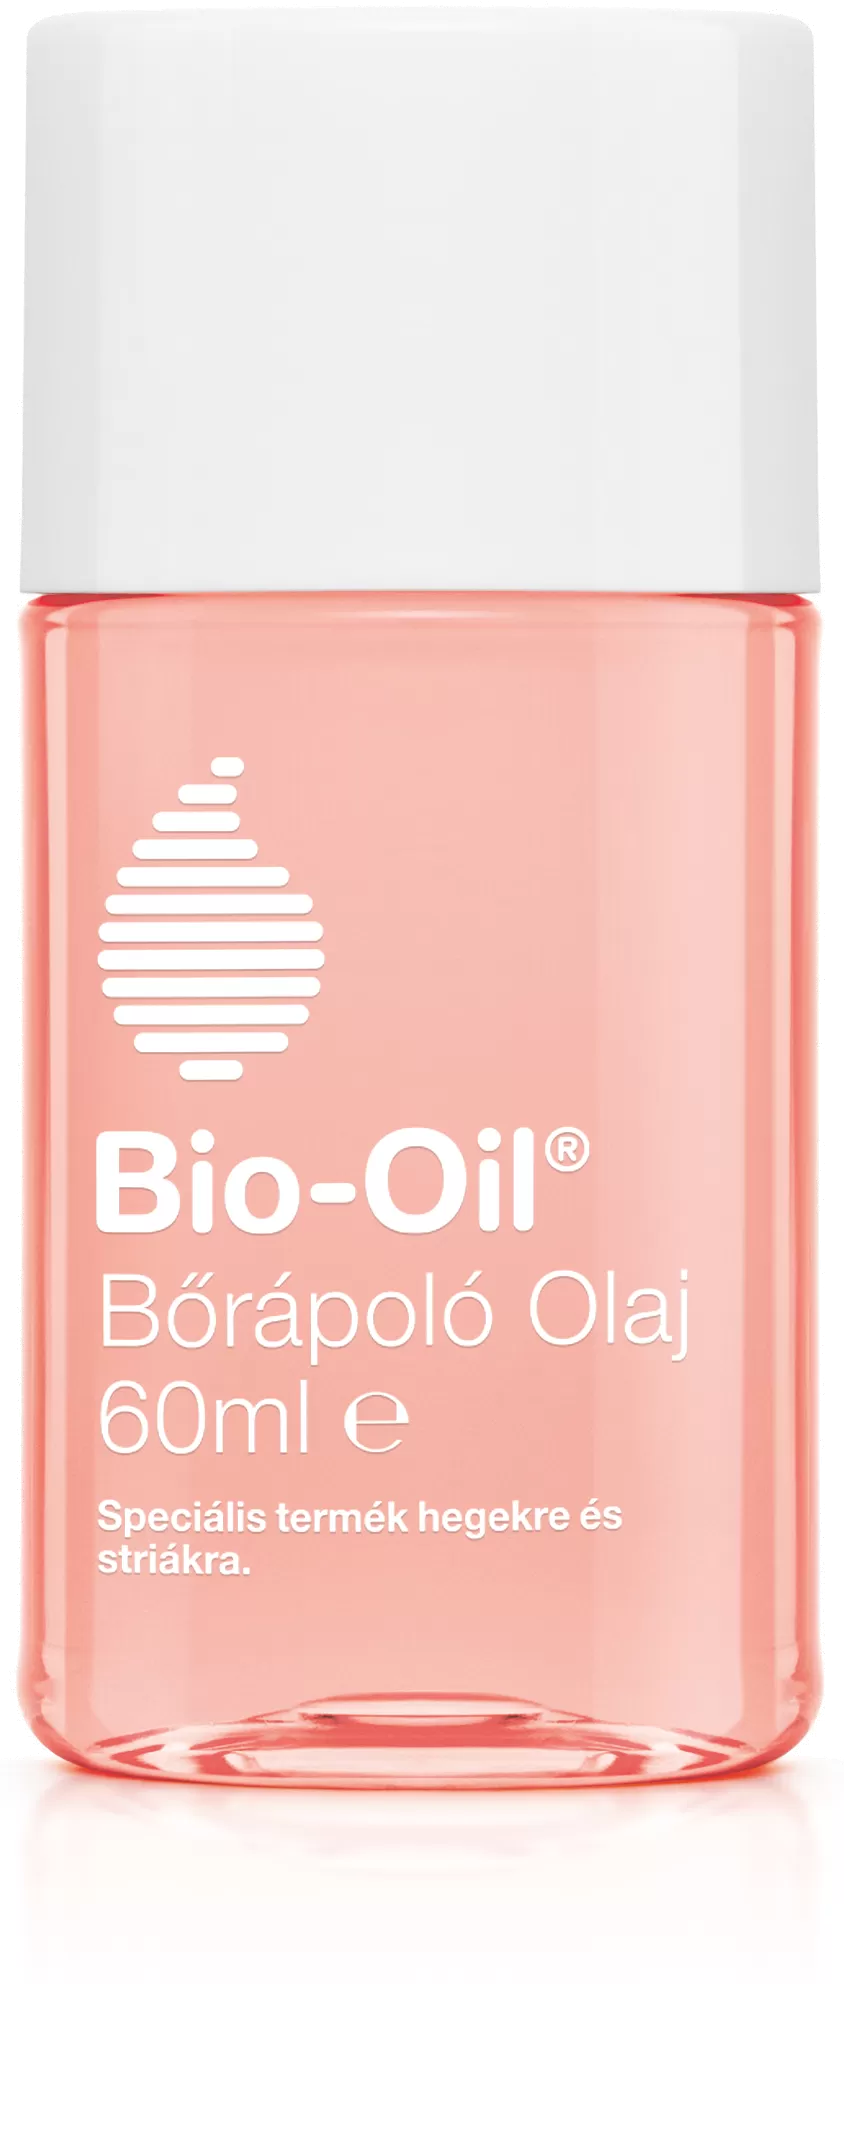 Szent Endre Gyógyszertár - Ceumed bio-oil bőrápoló olaj speciális  60ml